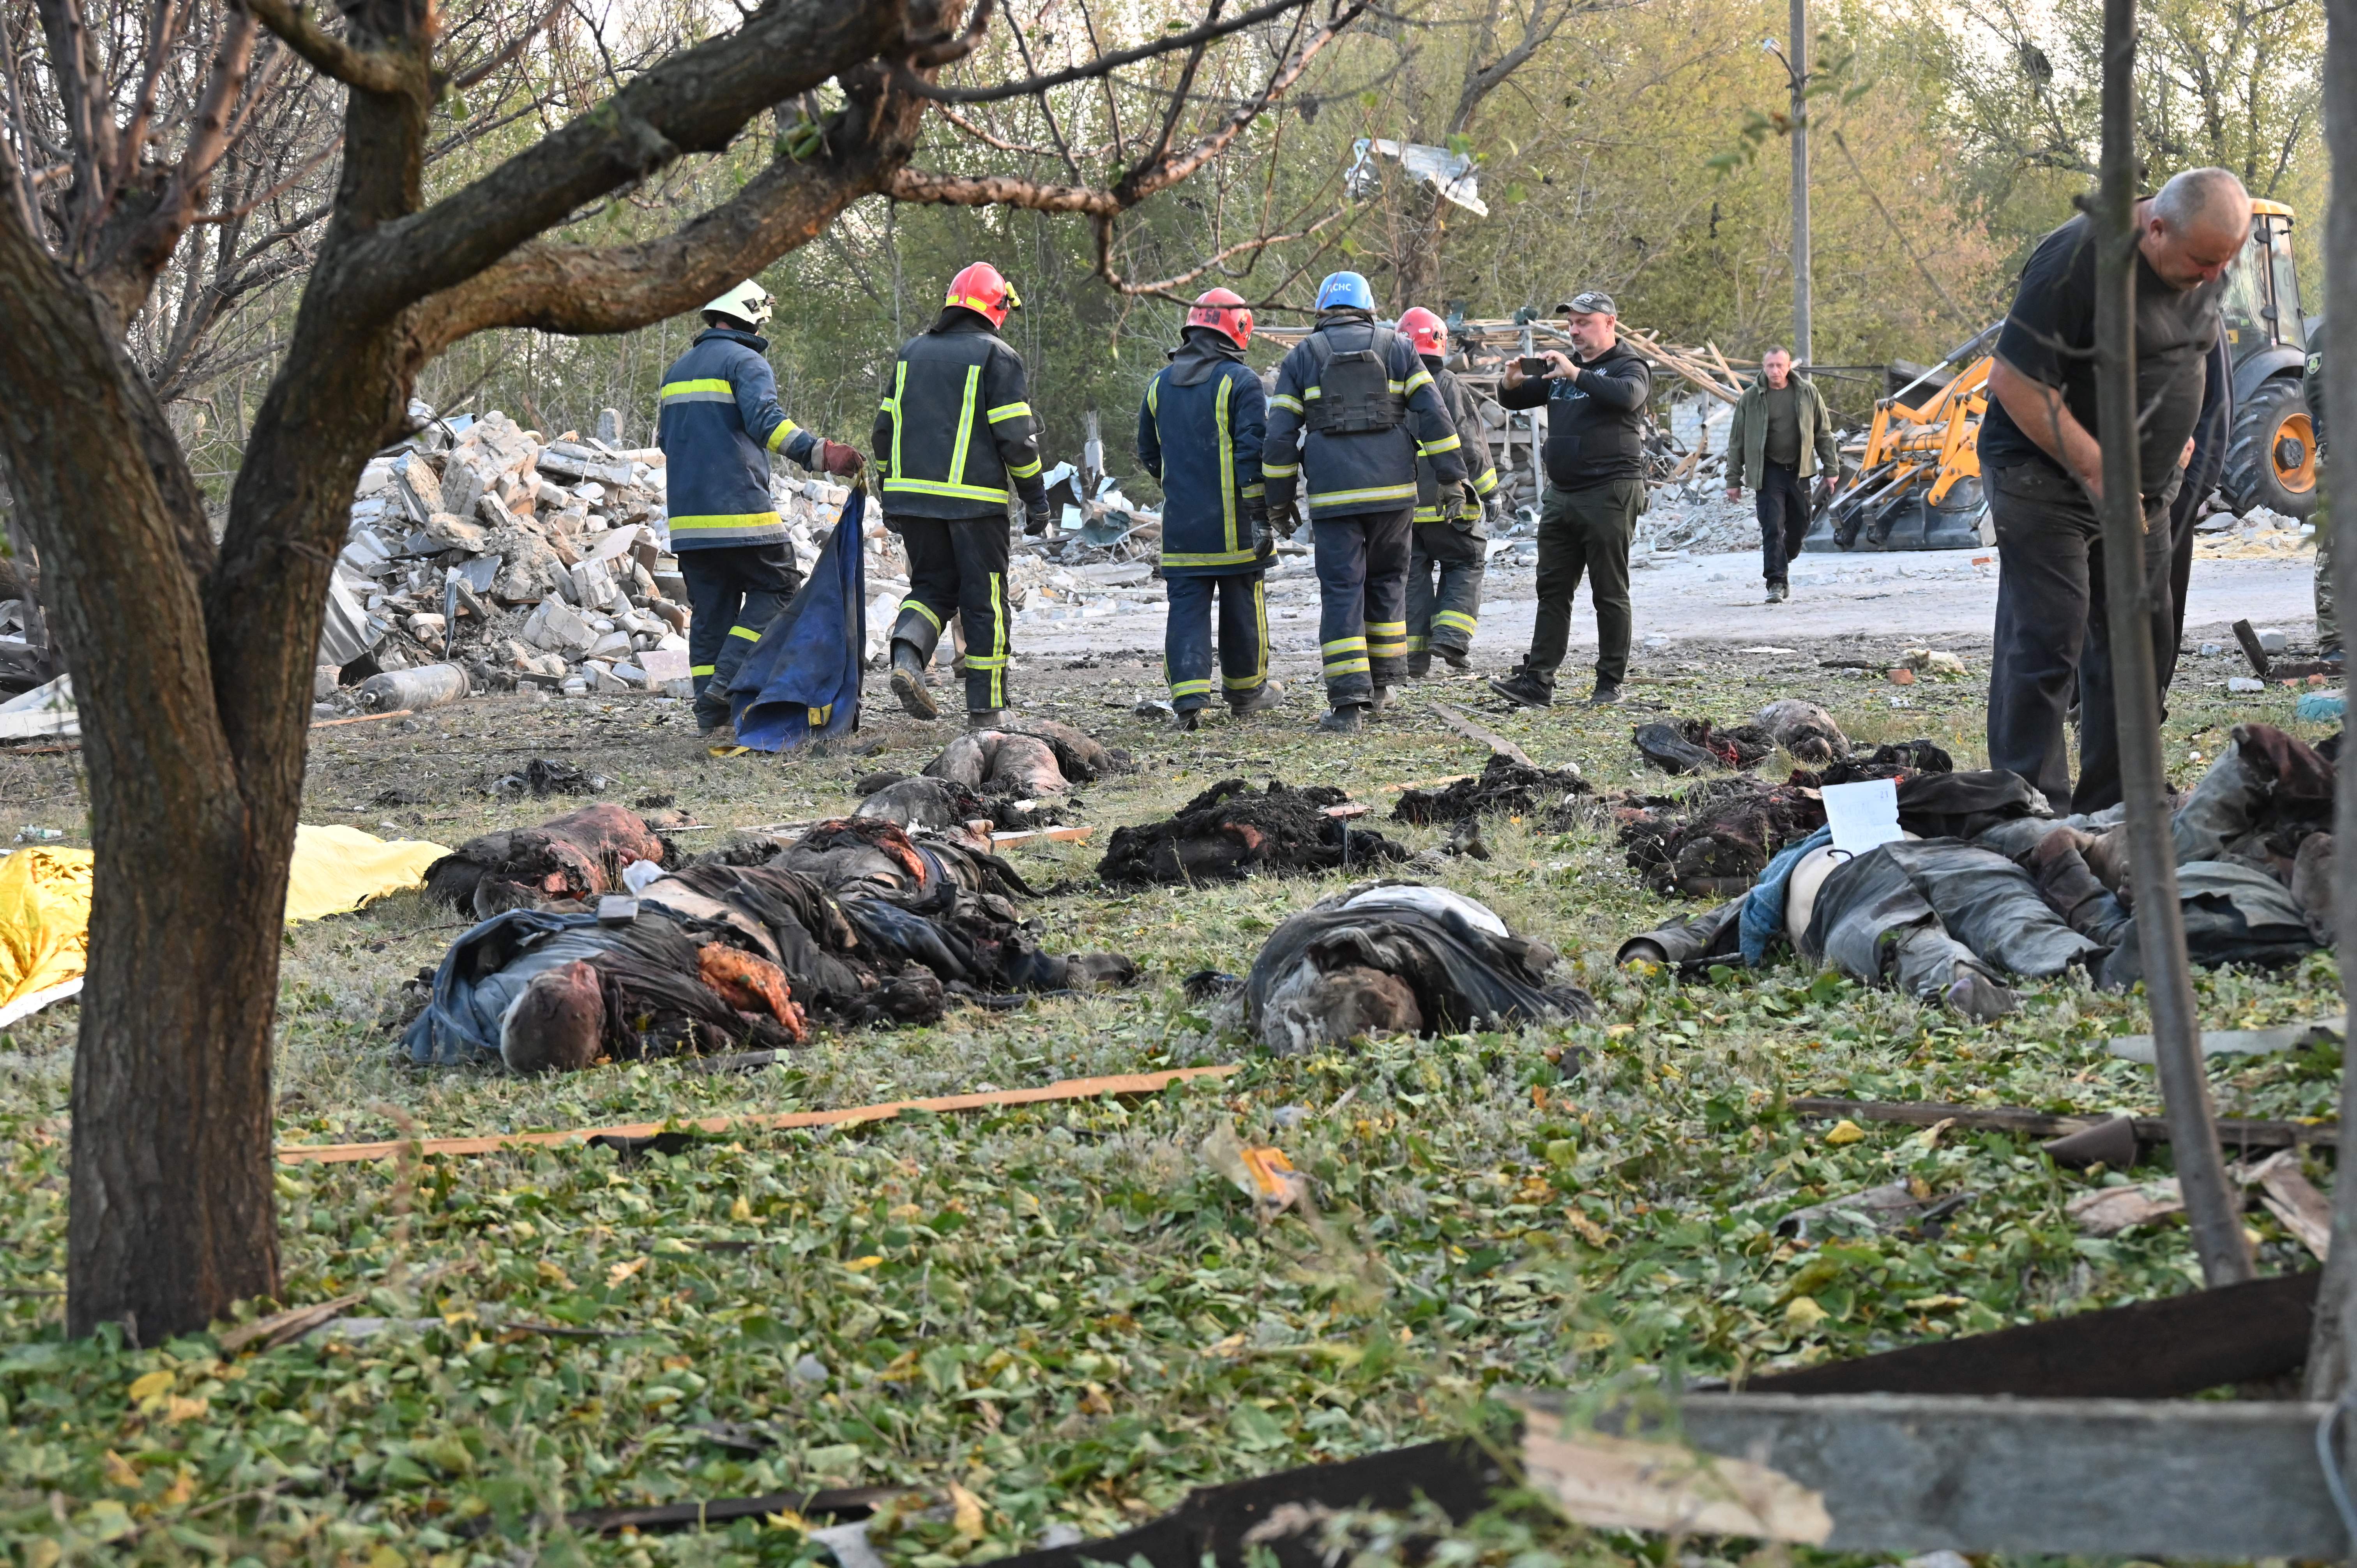 Las imágenes publicadas por la policía ucraniana mostraron una gran zona de escombros humeantes y varios cuerpos siendo retirados por trabajadores de emergencia en el pueblo ucraniano. (Foto: SERGEY BOBOK/AFP via Getty Images)